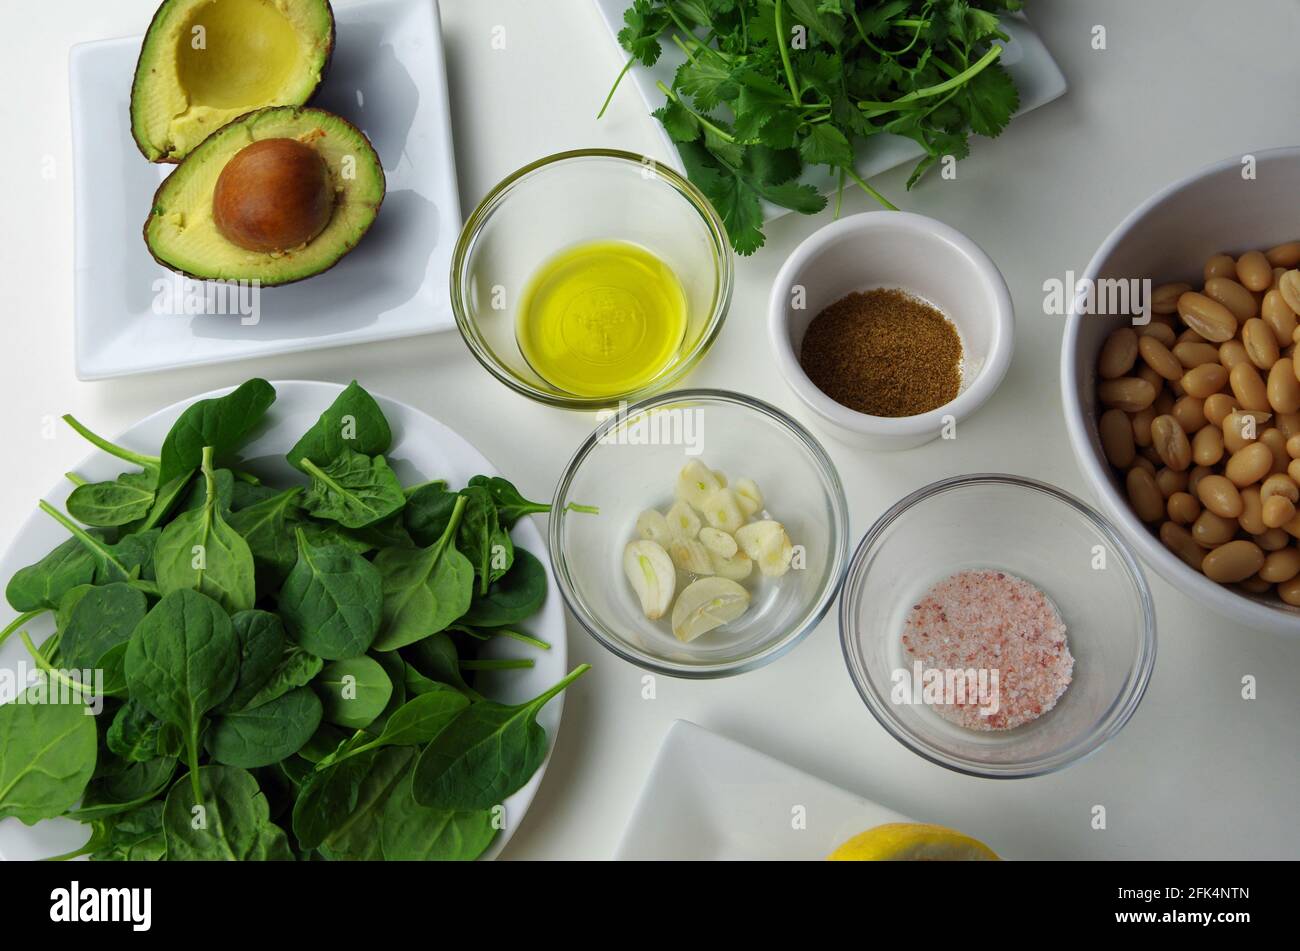 Ingrédients alimentaires sains utilisés pour préparer une délicieuse trempette, y compris l'avocat, l'huile d'olive, l'ail, le cumin, sel rose, haricots, épinards, coriandre et citron Banque D'Images